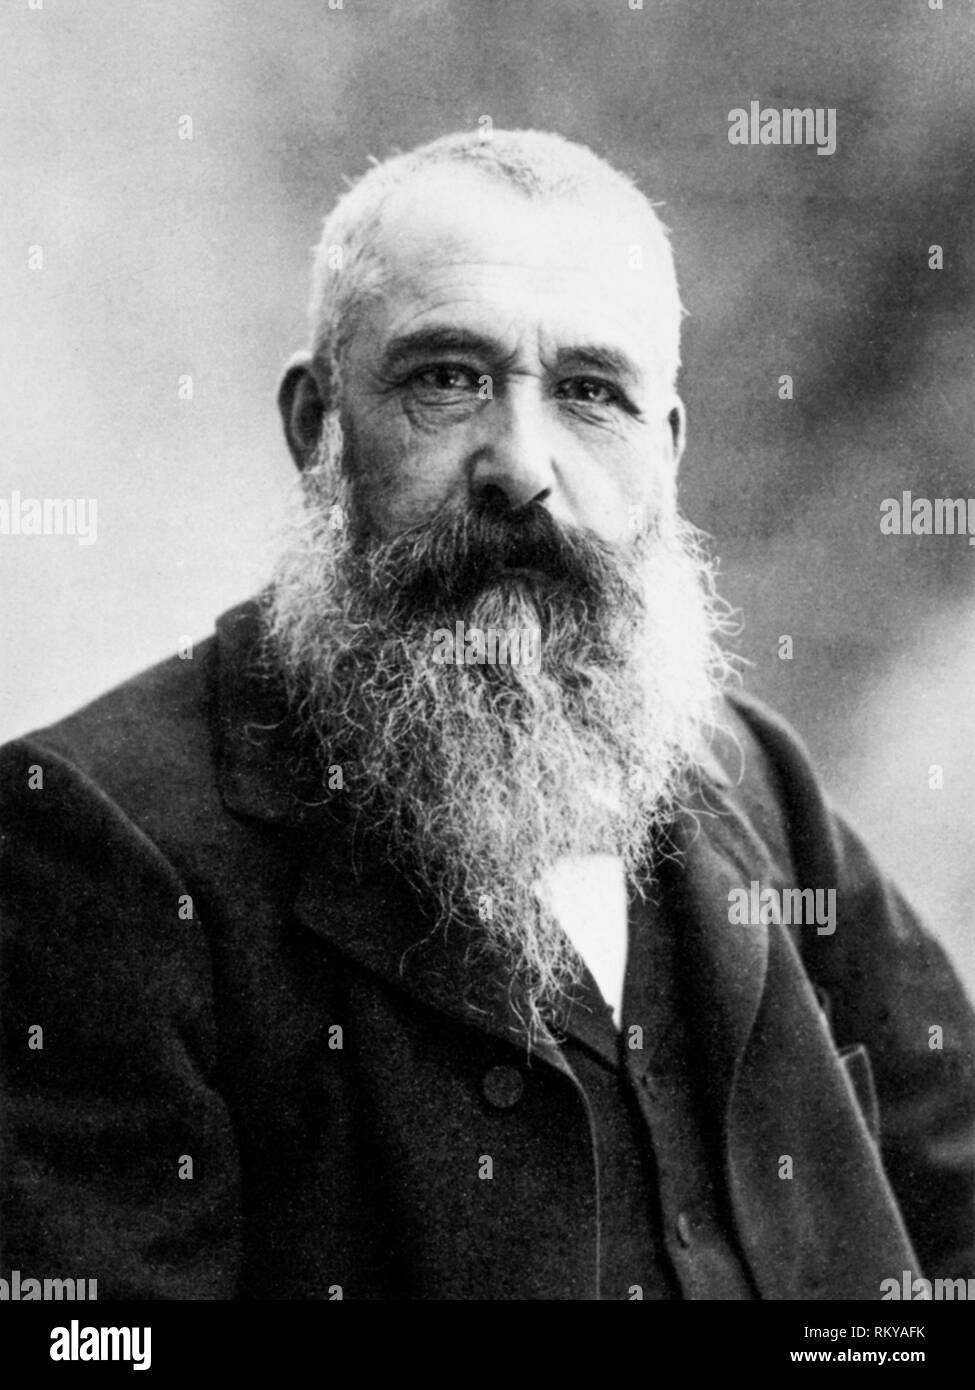 Portrait photographique du peintre impressionniste français Claude Monet par Nadar, 1899 Banque D'Images